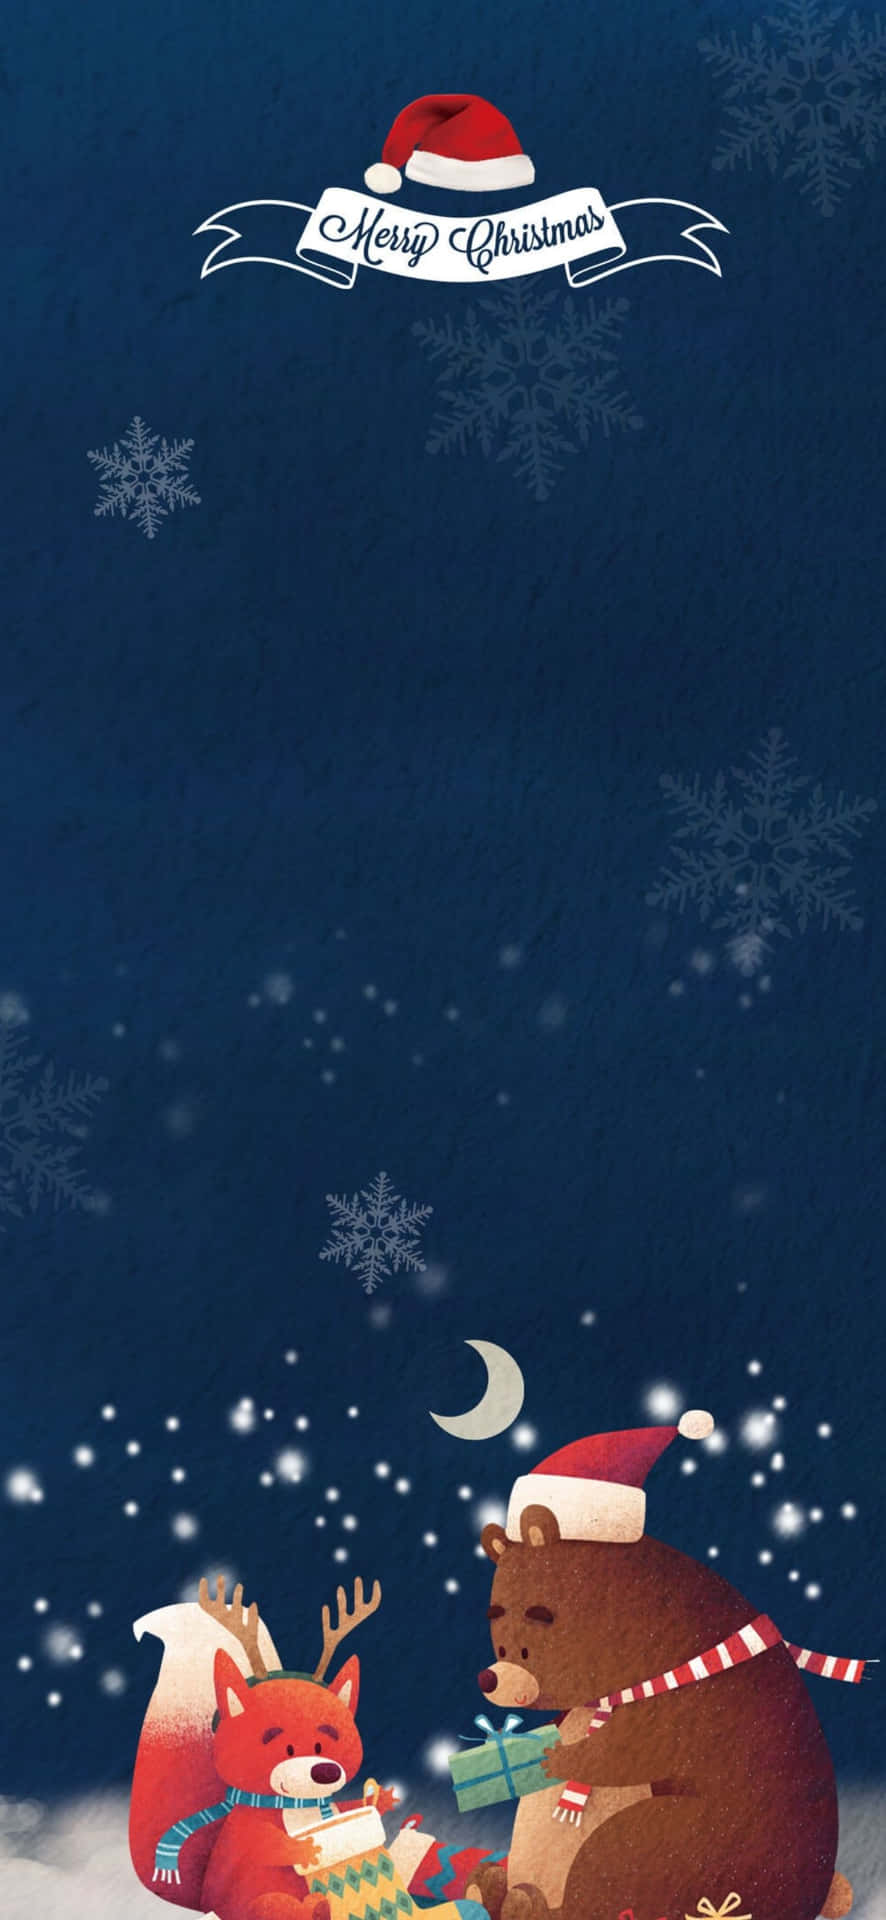 Esist Weihnachtszeit! Feiere Mit Diesem Festlichen Hintergrund Für Dein Iphone.